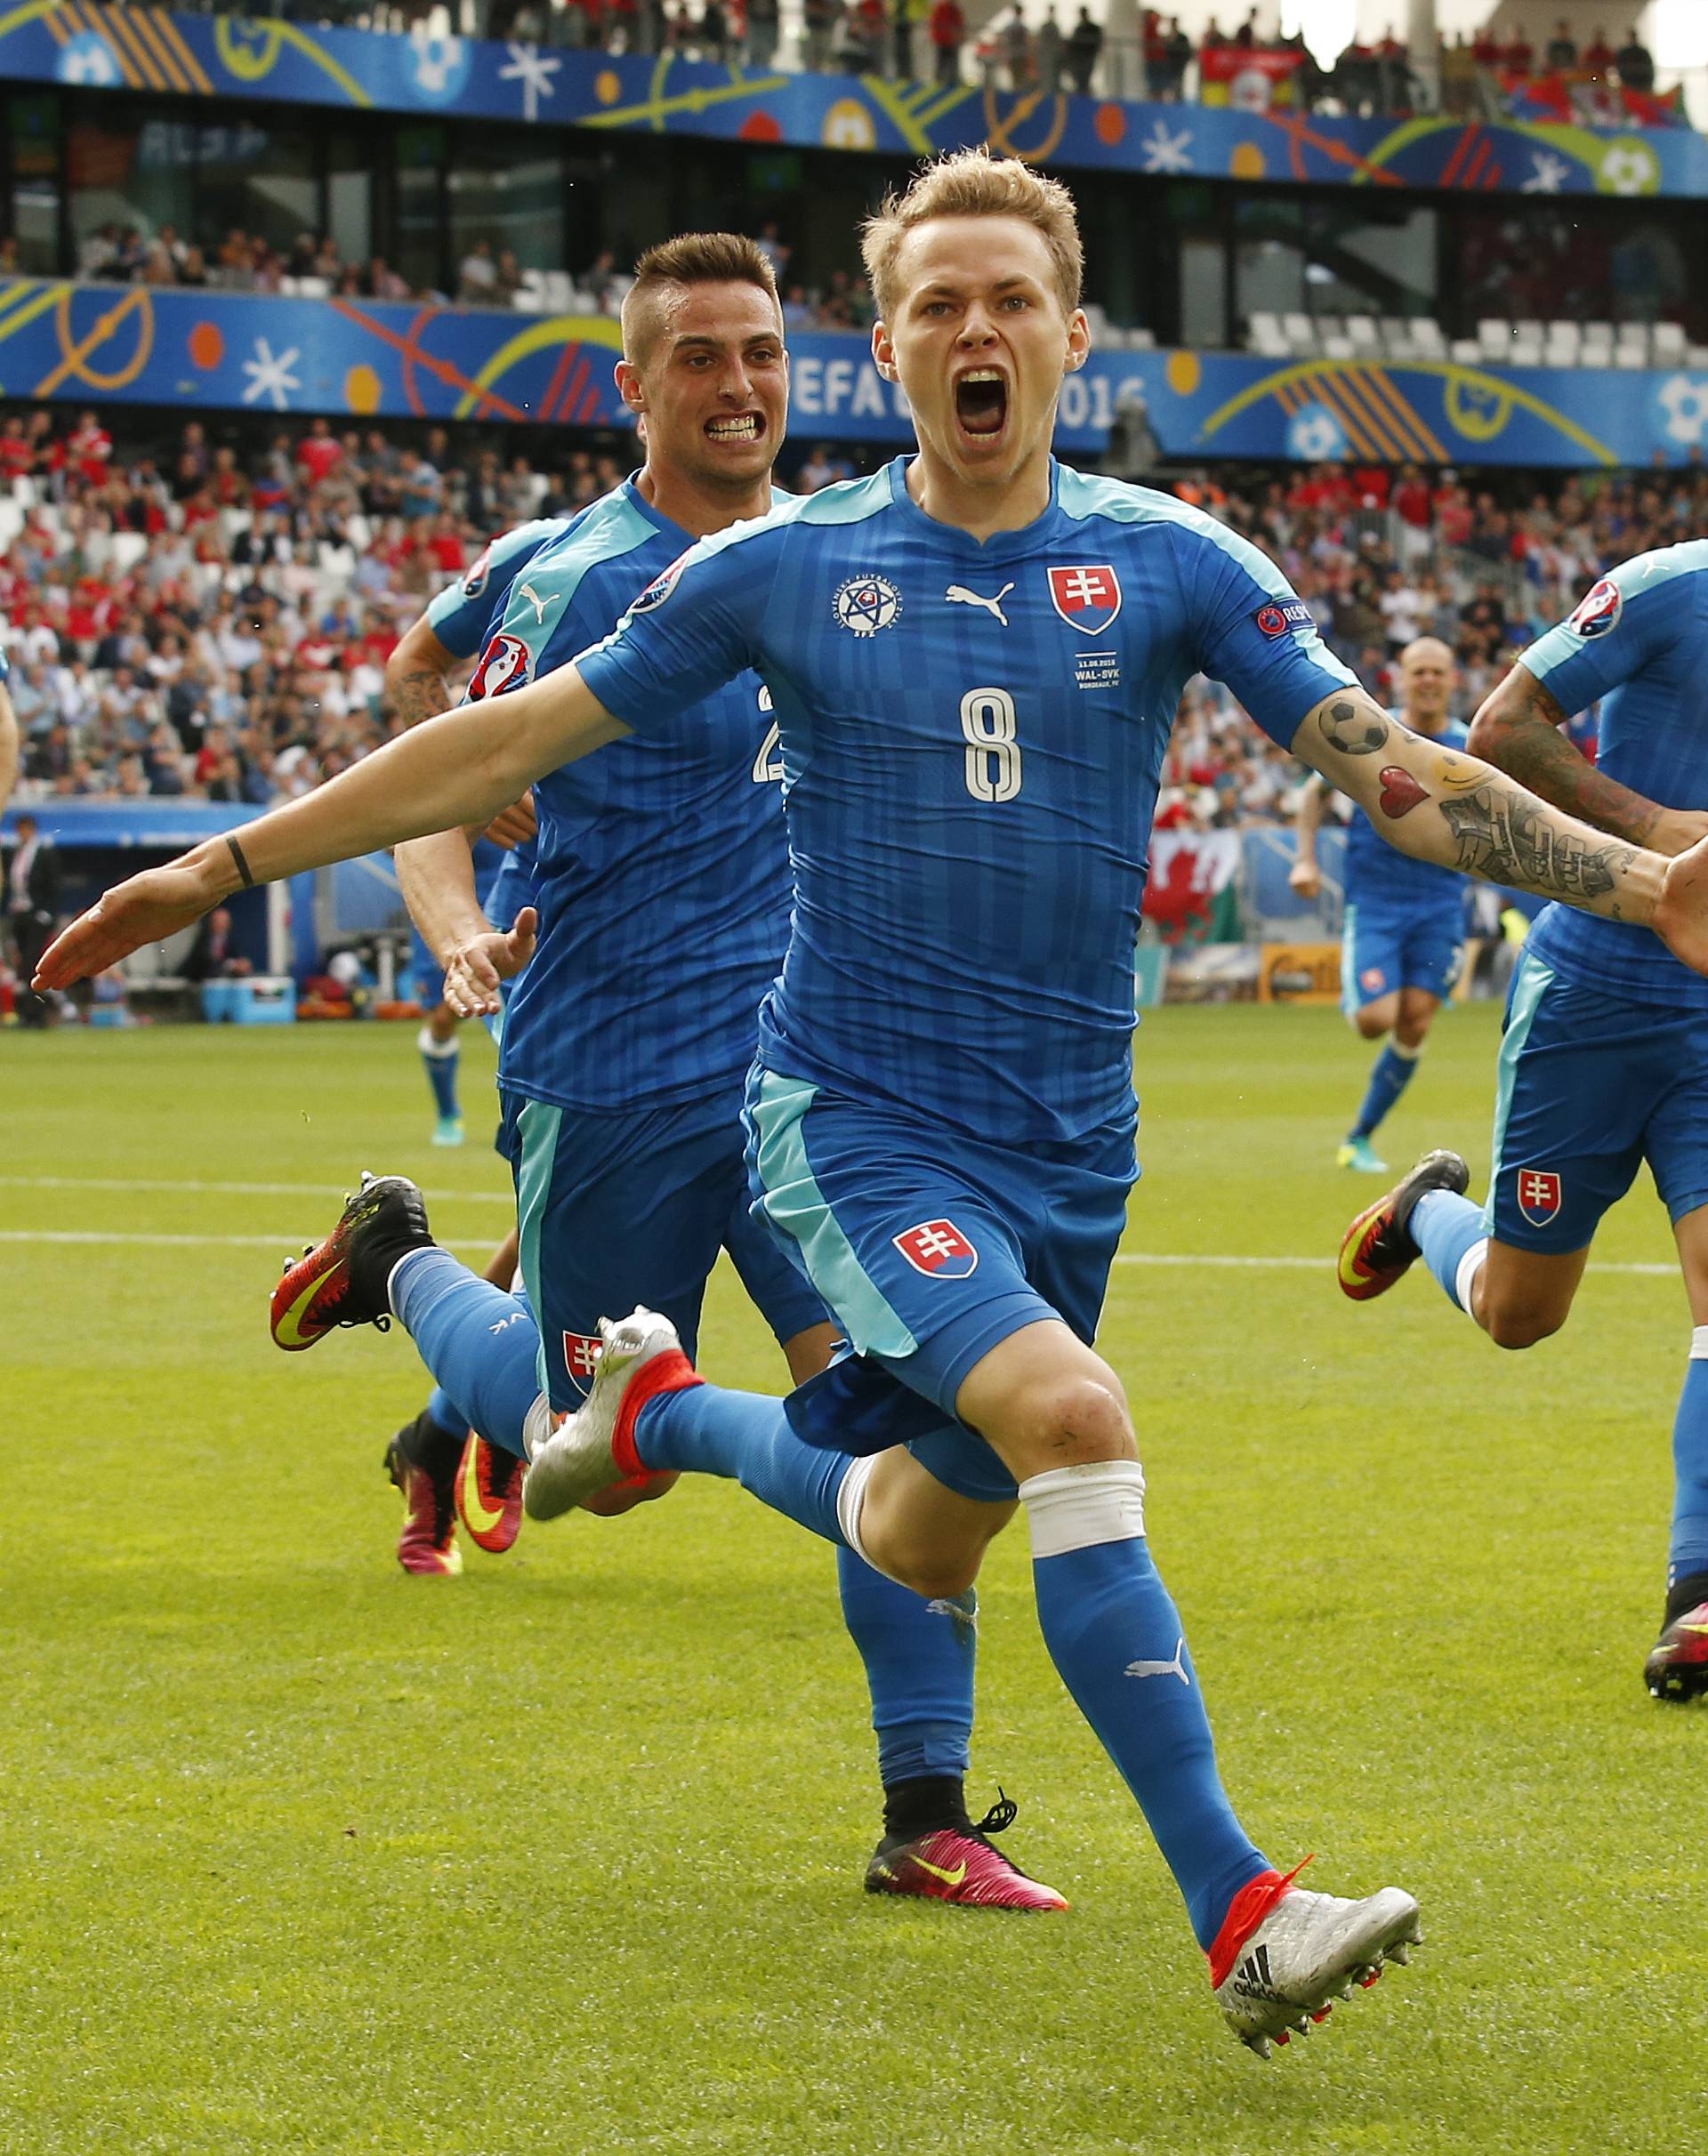 Wales v Slovakia - EURO 2016 - Group B